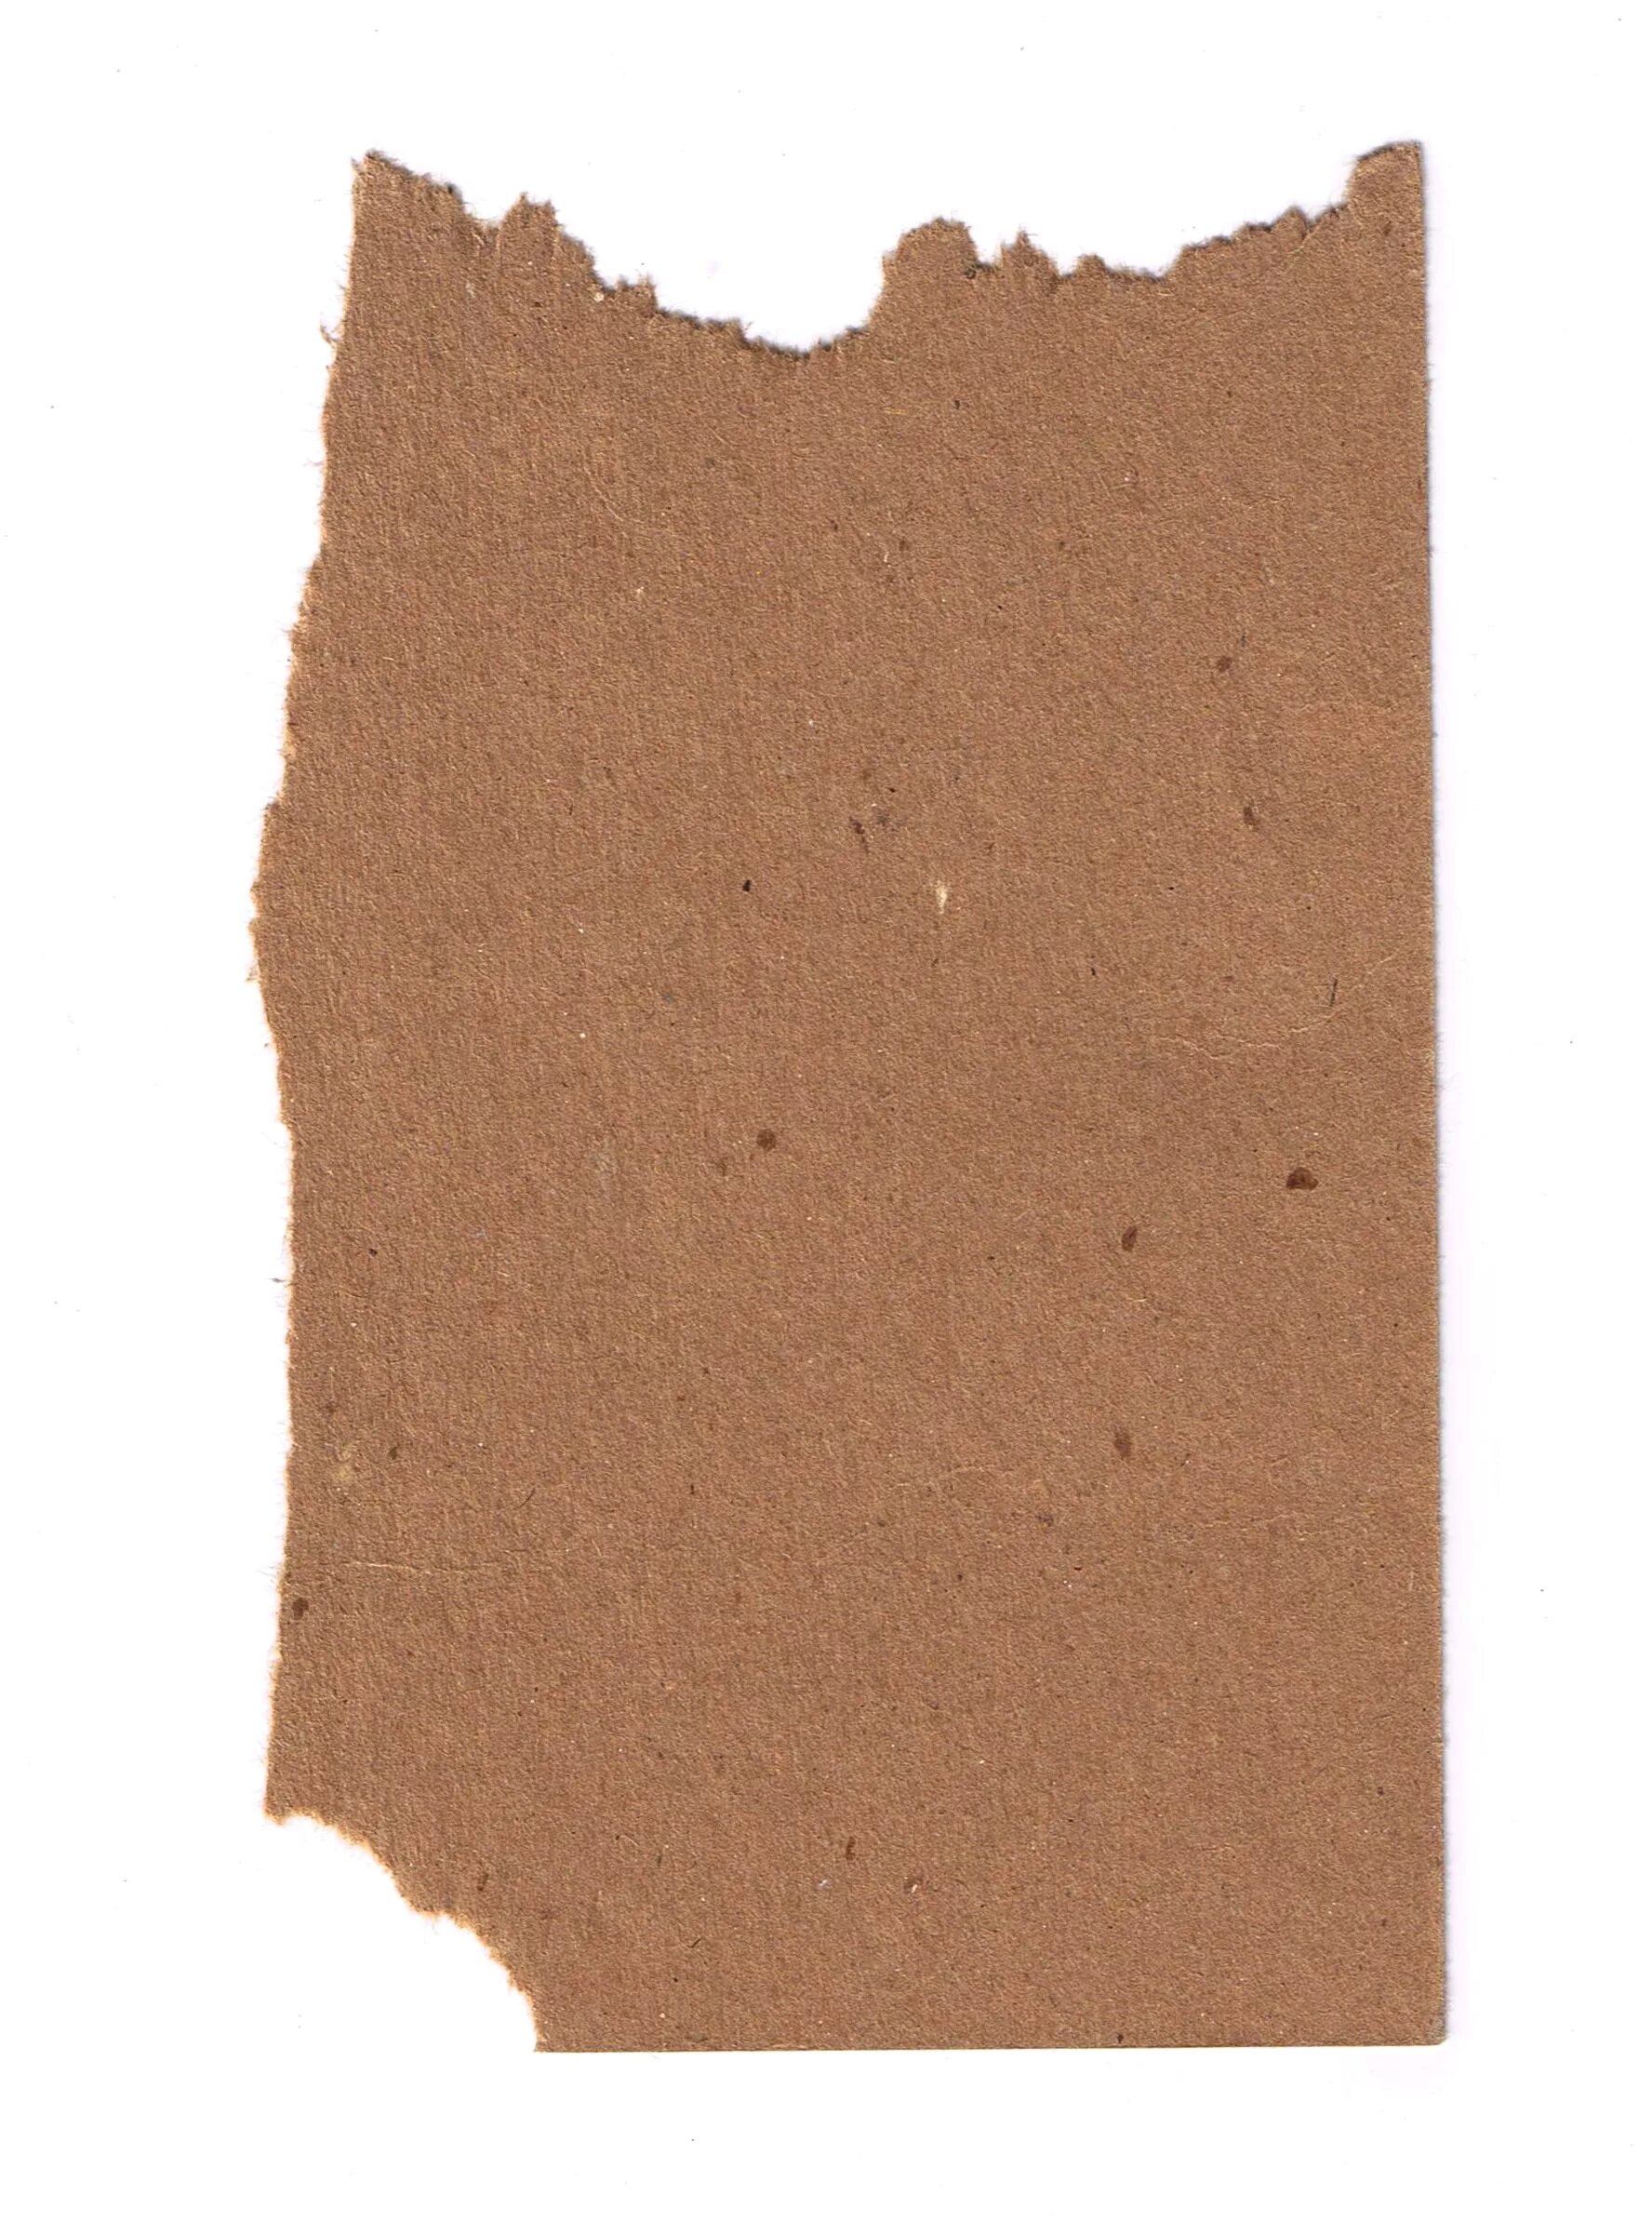 Рваная бумага. Крафтовая бумага с рваными краями. Оборванная крафтовая бумага. Кусок рваной бумаги